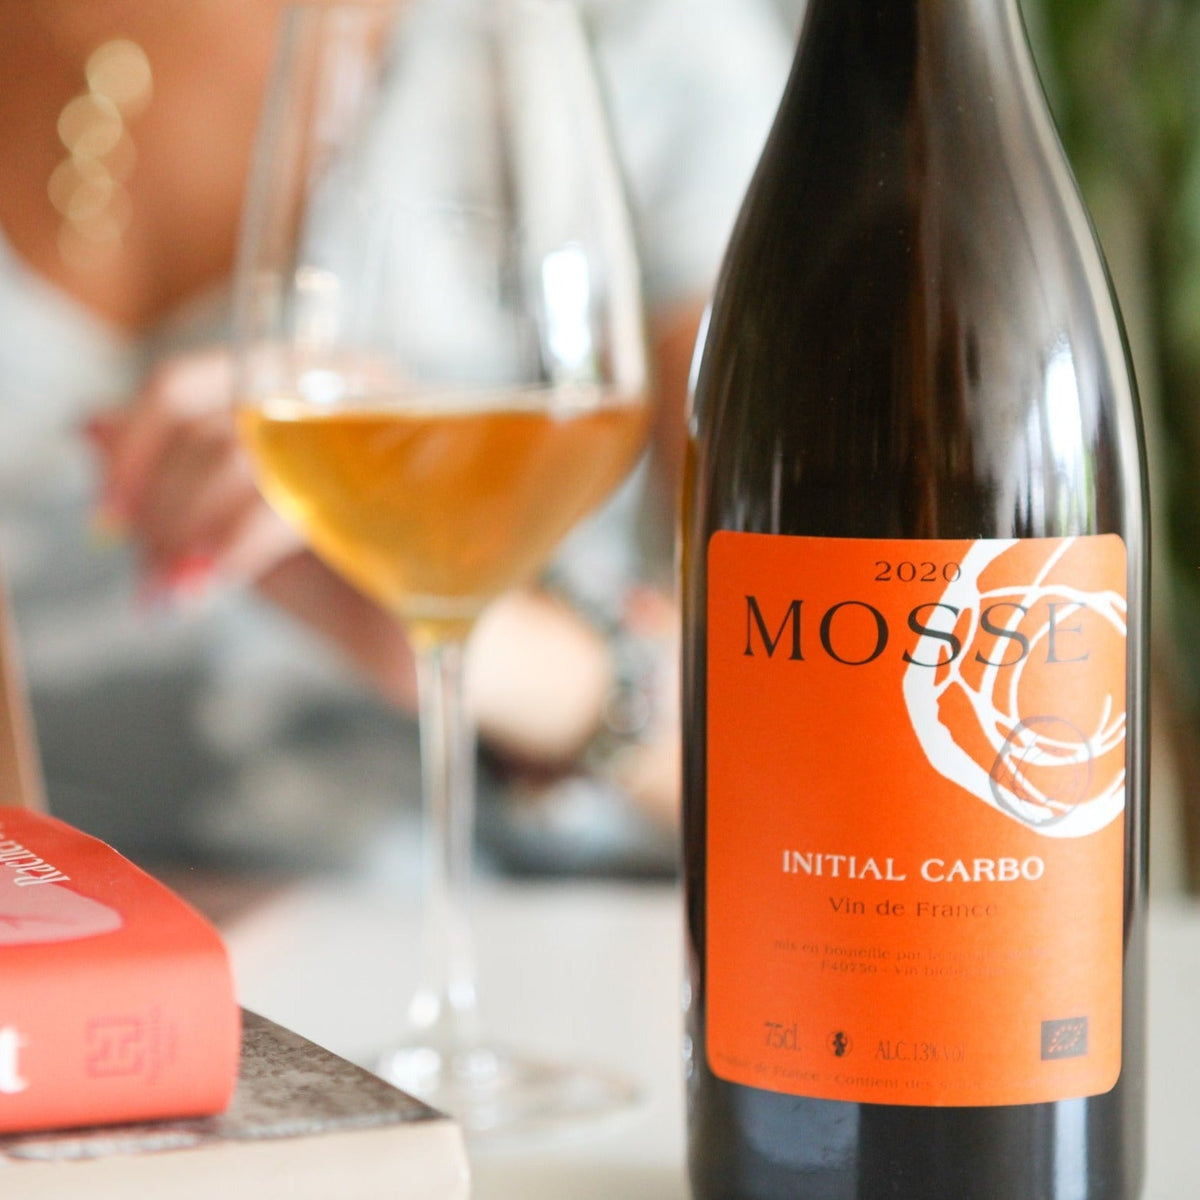 Initial carbo 2020 - Orange - Domaine Mosse - Le vin dans les voiles